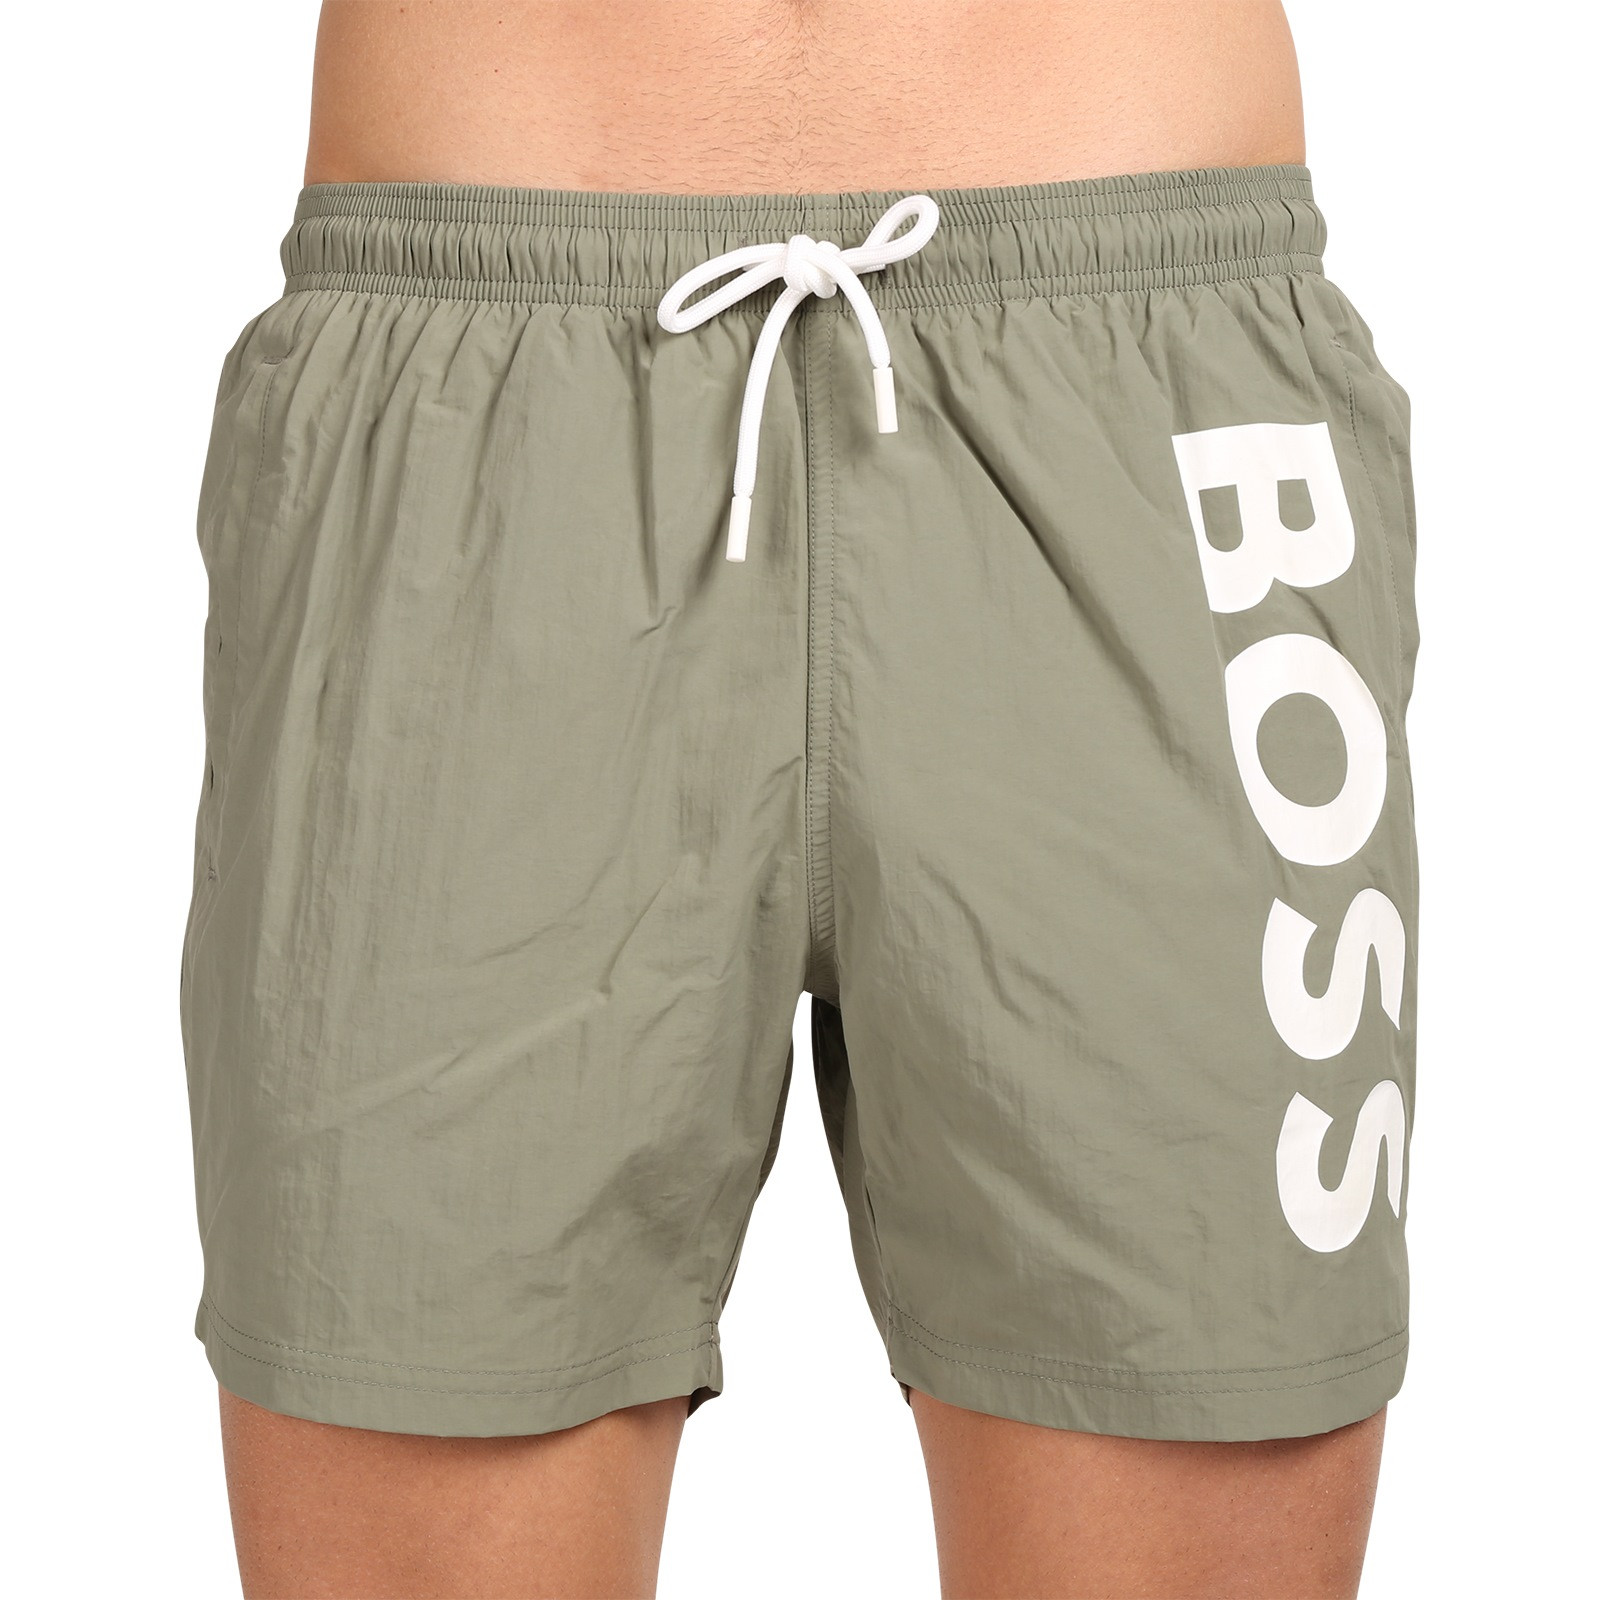 Men's swimwear Hugo Boss green